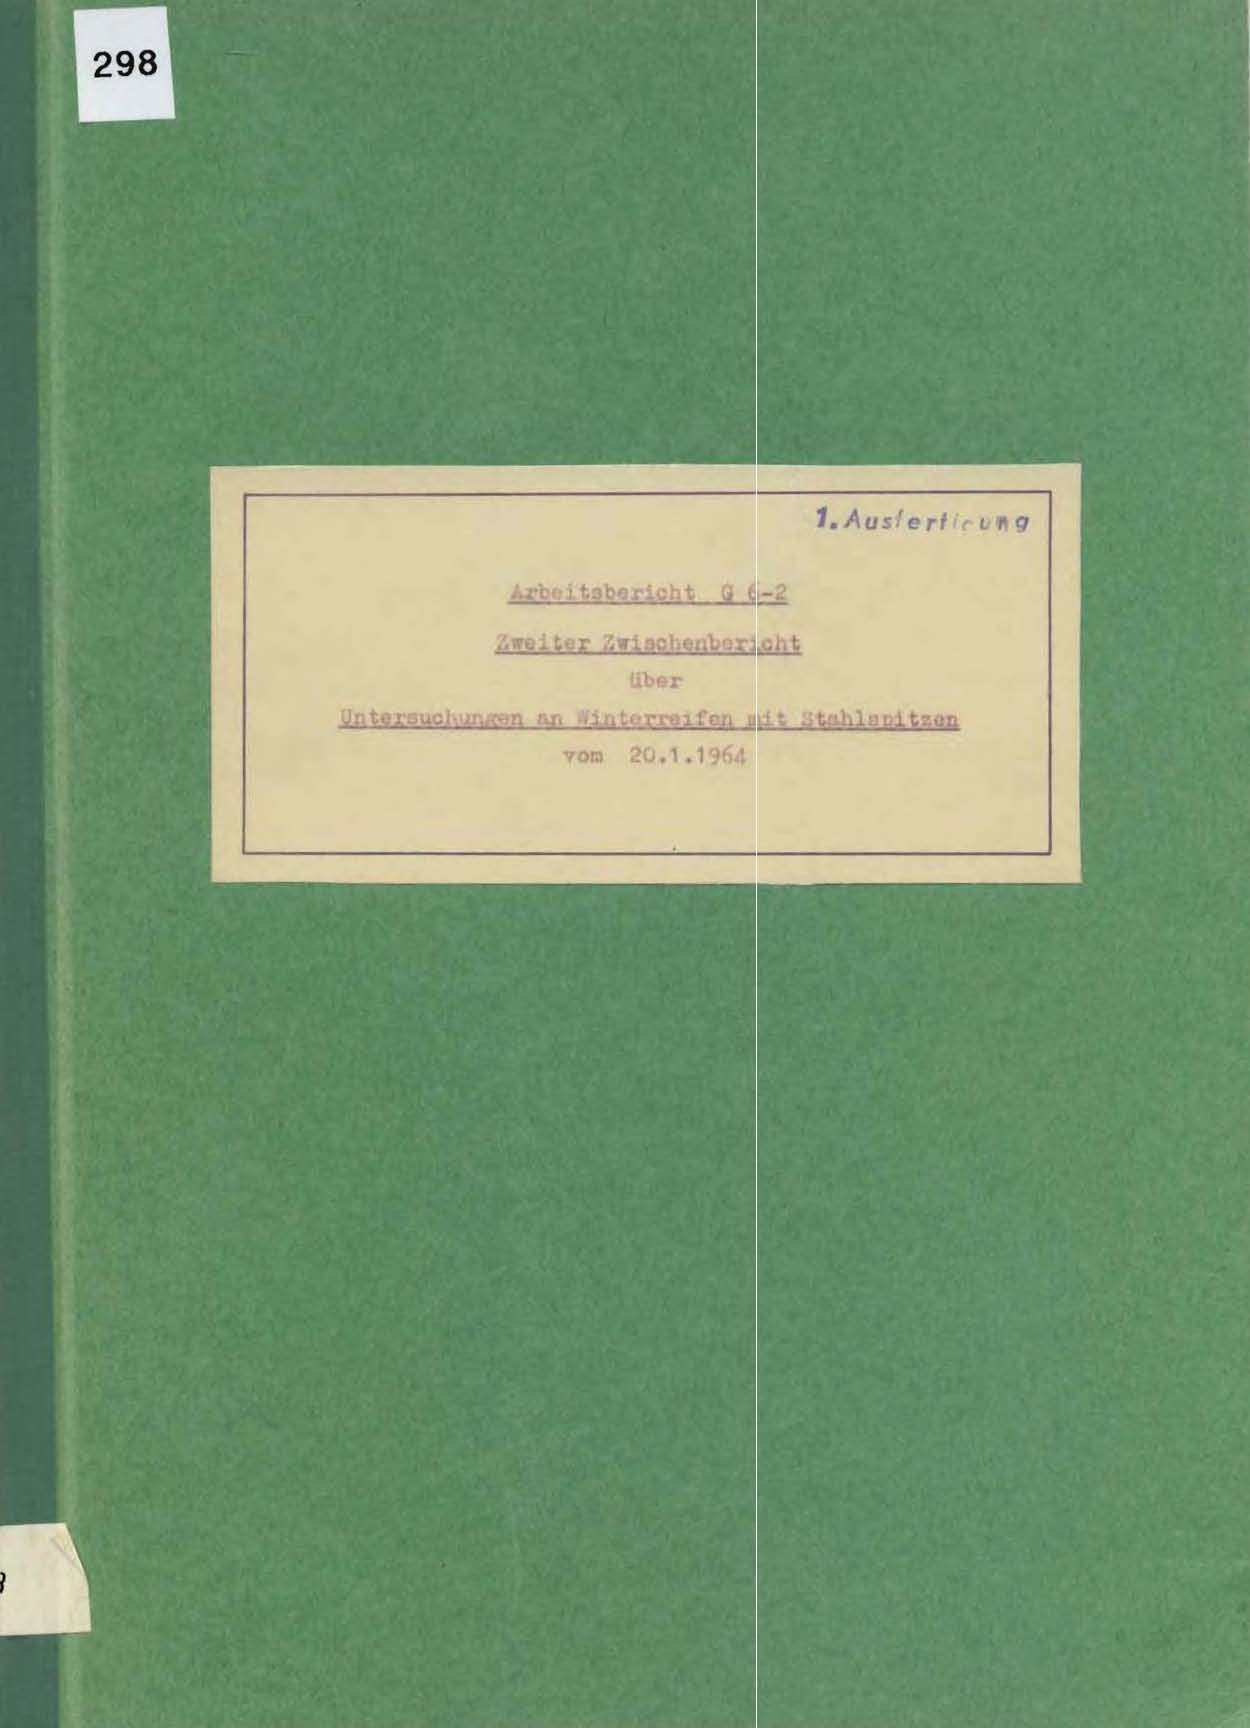 Arbeitsbericht G 6-2 des Bauhofes für den Winterdienst in Inzell vom 20.1.1964